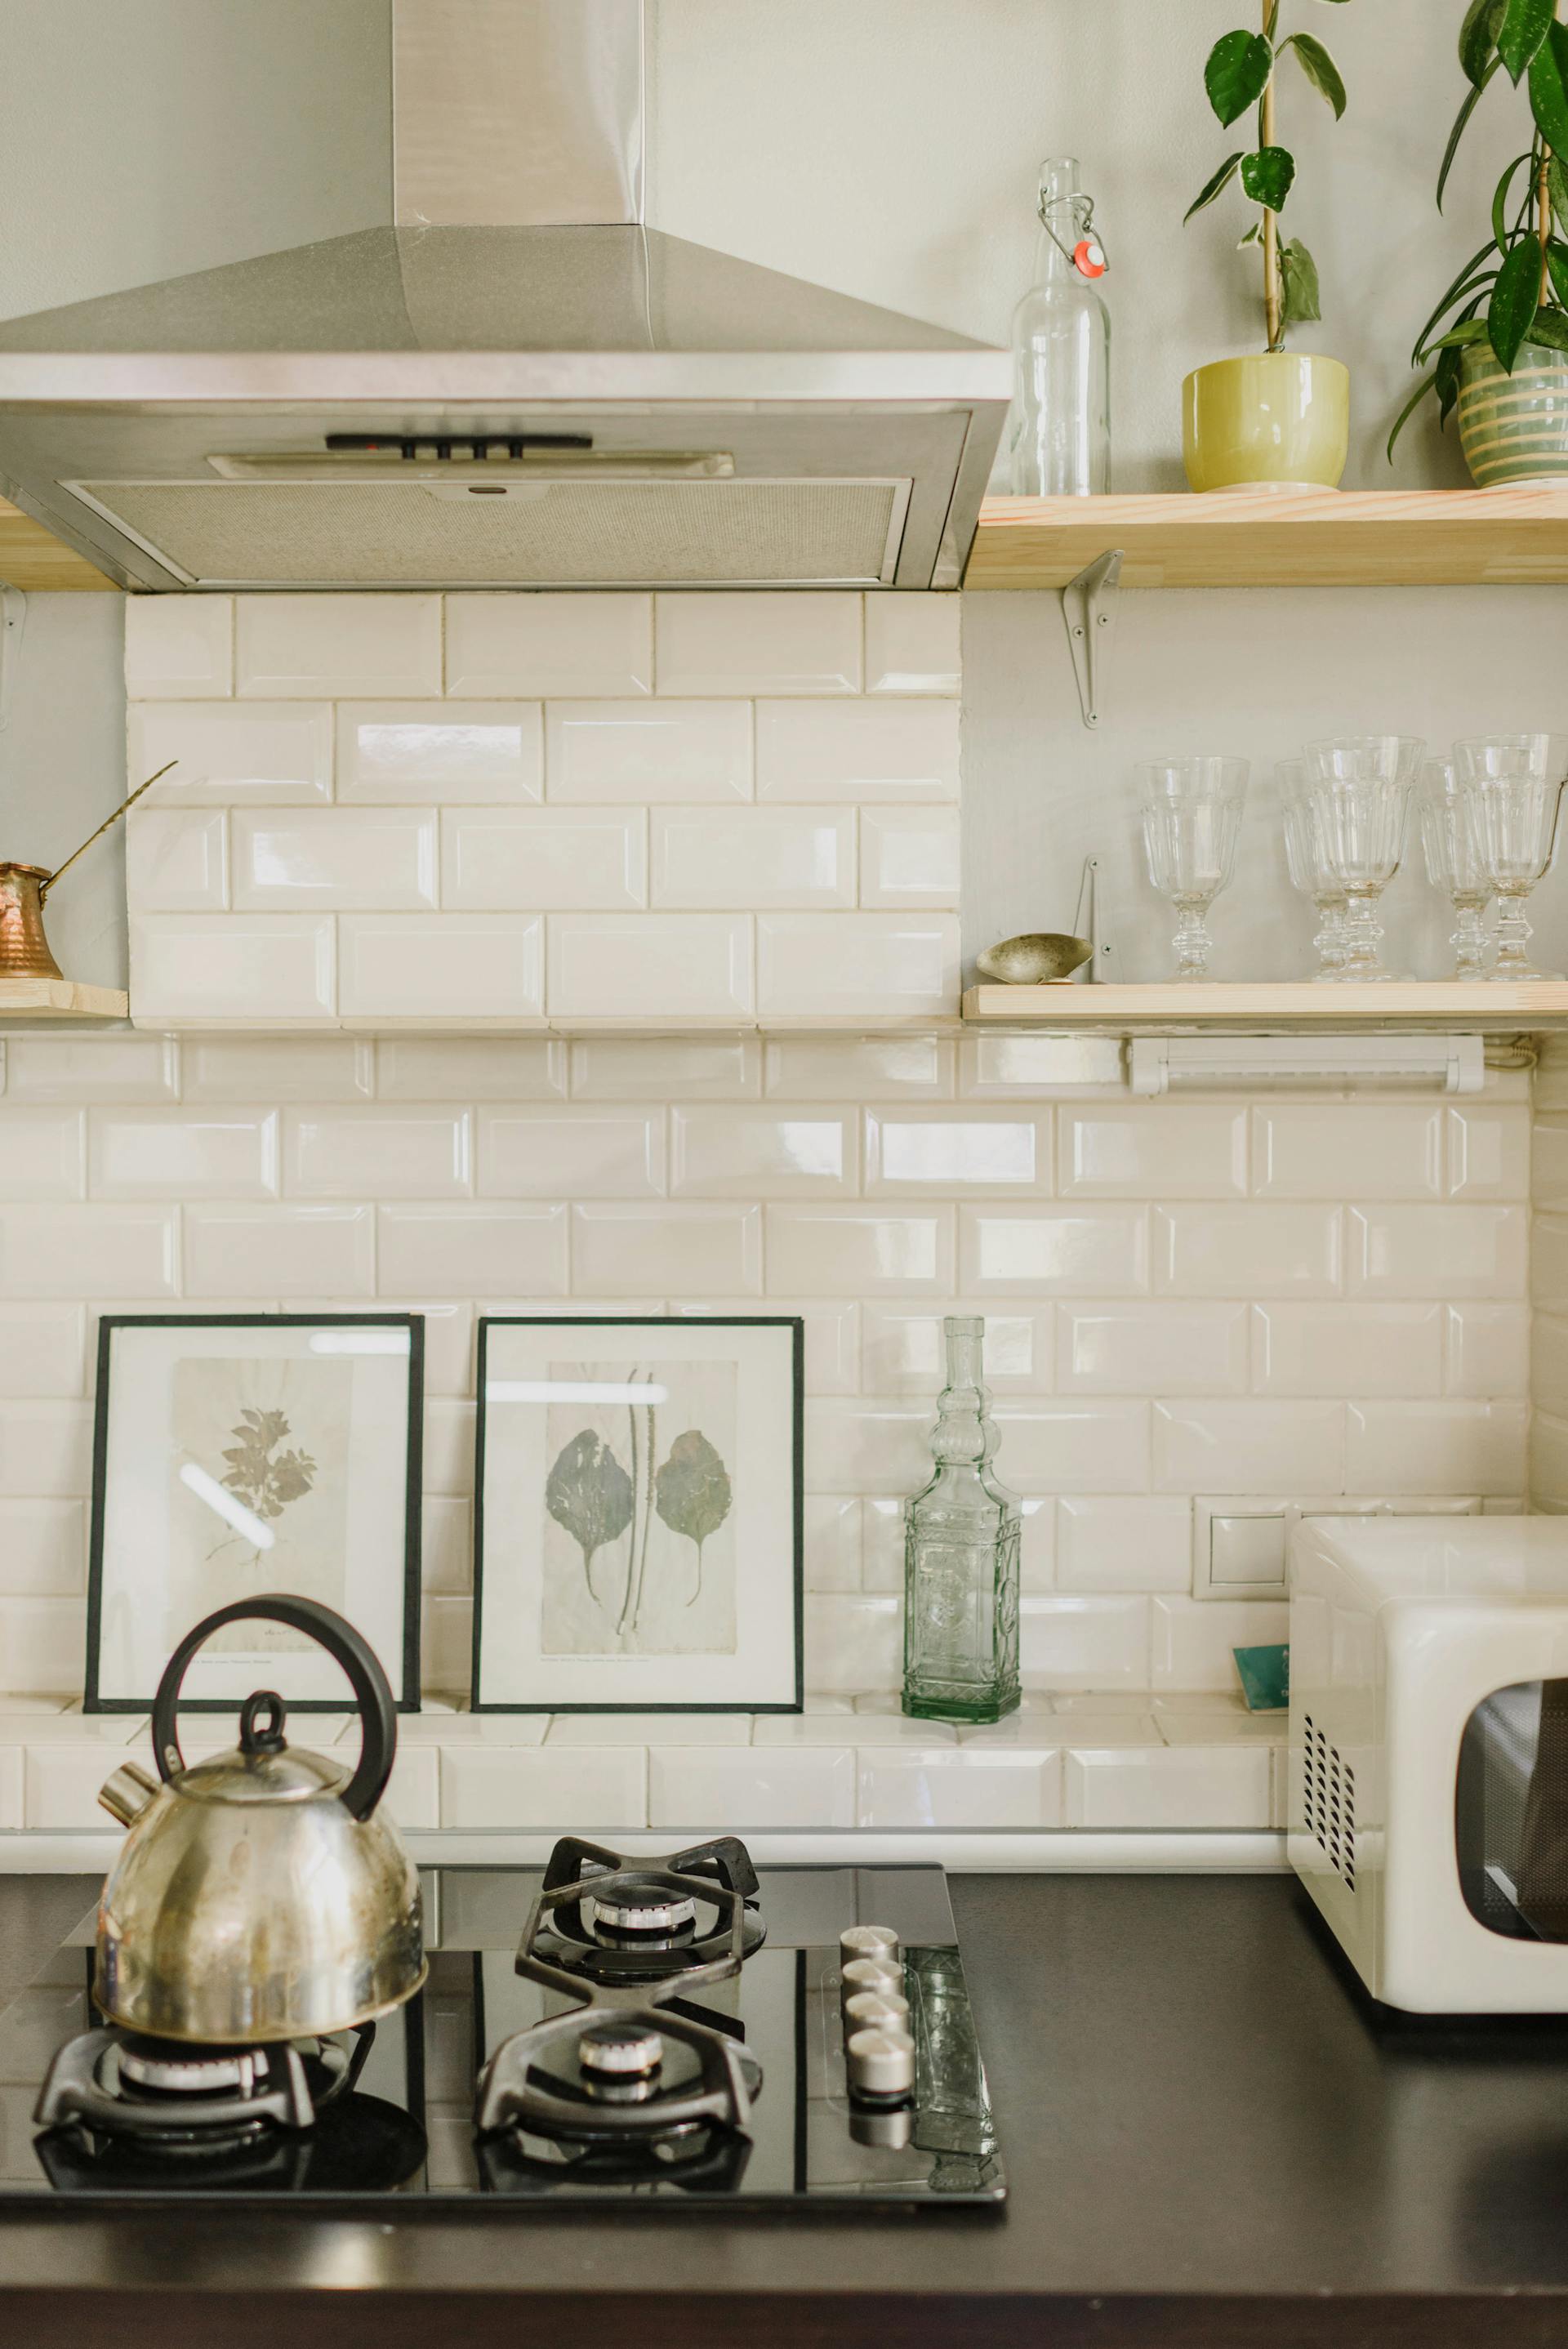 Un comptoir de cuisine propre | Source : Pexels